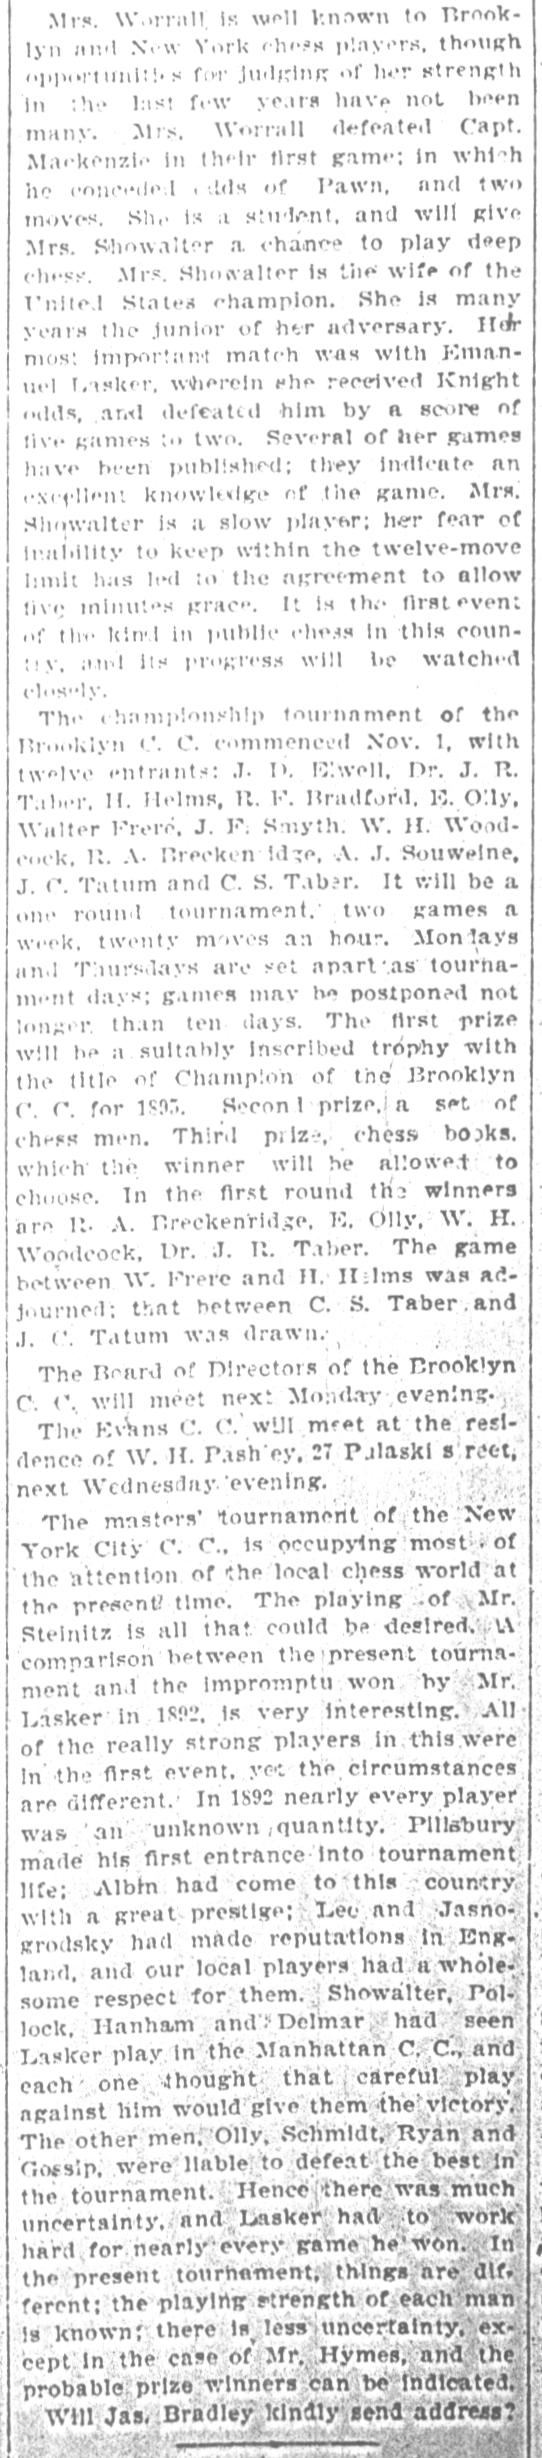 1894.11.03-04 Brooklyn Daily Standard-Union.jpg